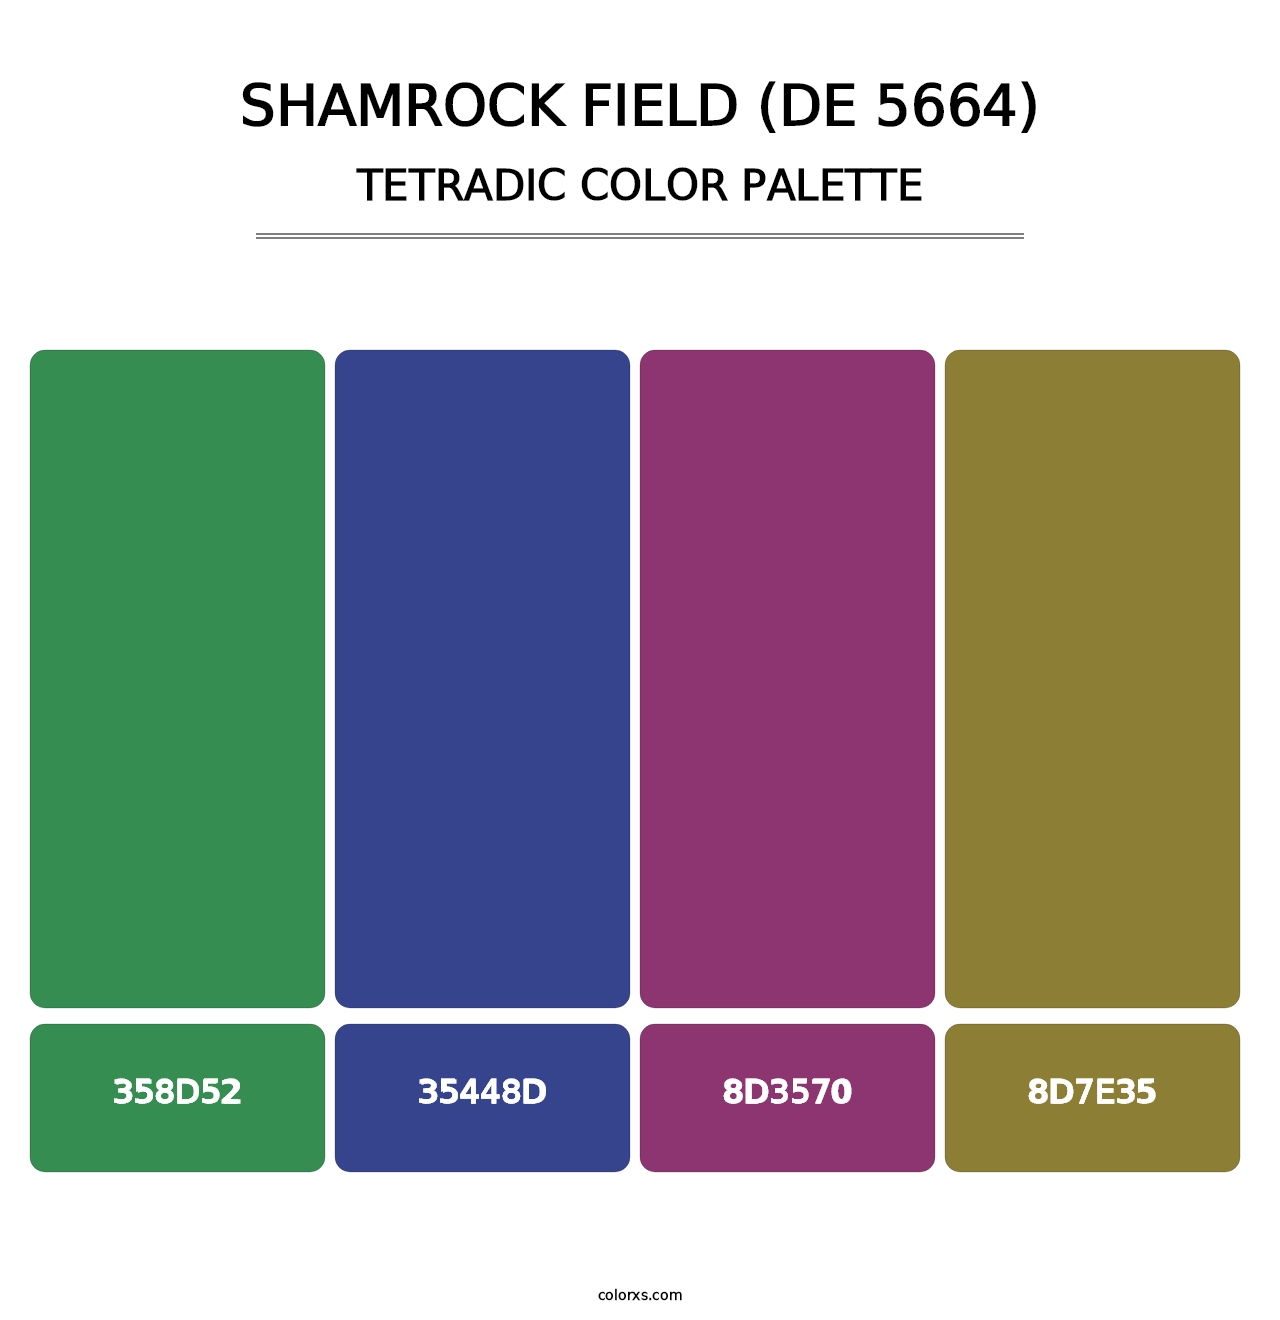 Shamrock Field (DE 5664) - Tetradic Color Palette